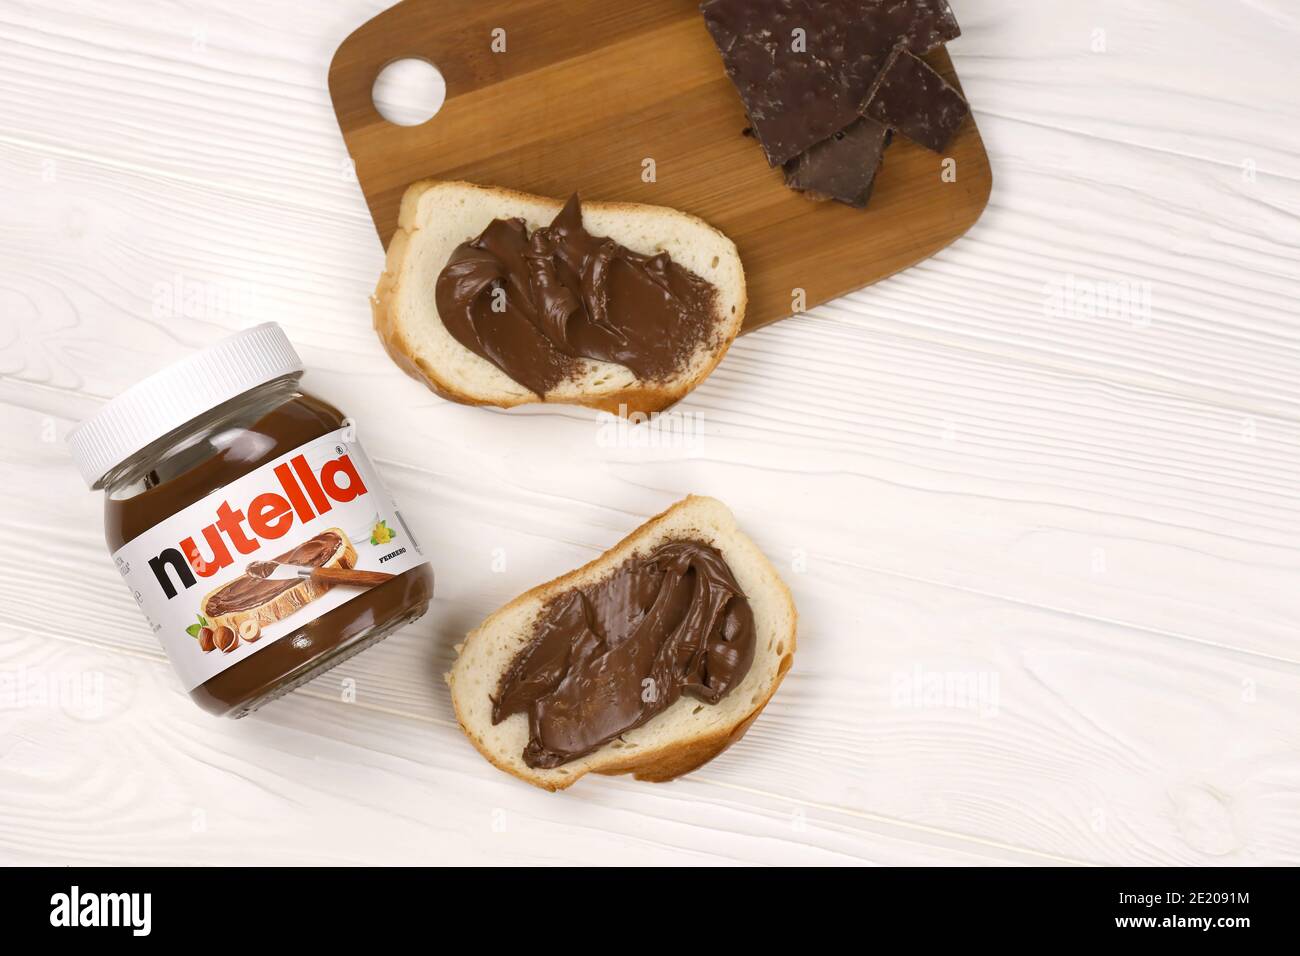 KHARKOV, UKRAINE - 27 DÉCEMBRE 2020 : le verre de Nutella peut et tartiner sur du pain frais. Nutella est fabriqué par la société italienne Ferrero firs Banque D'Images